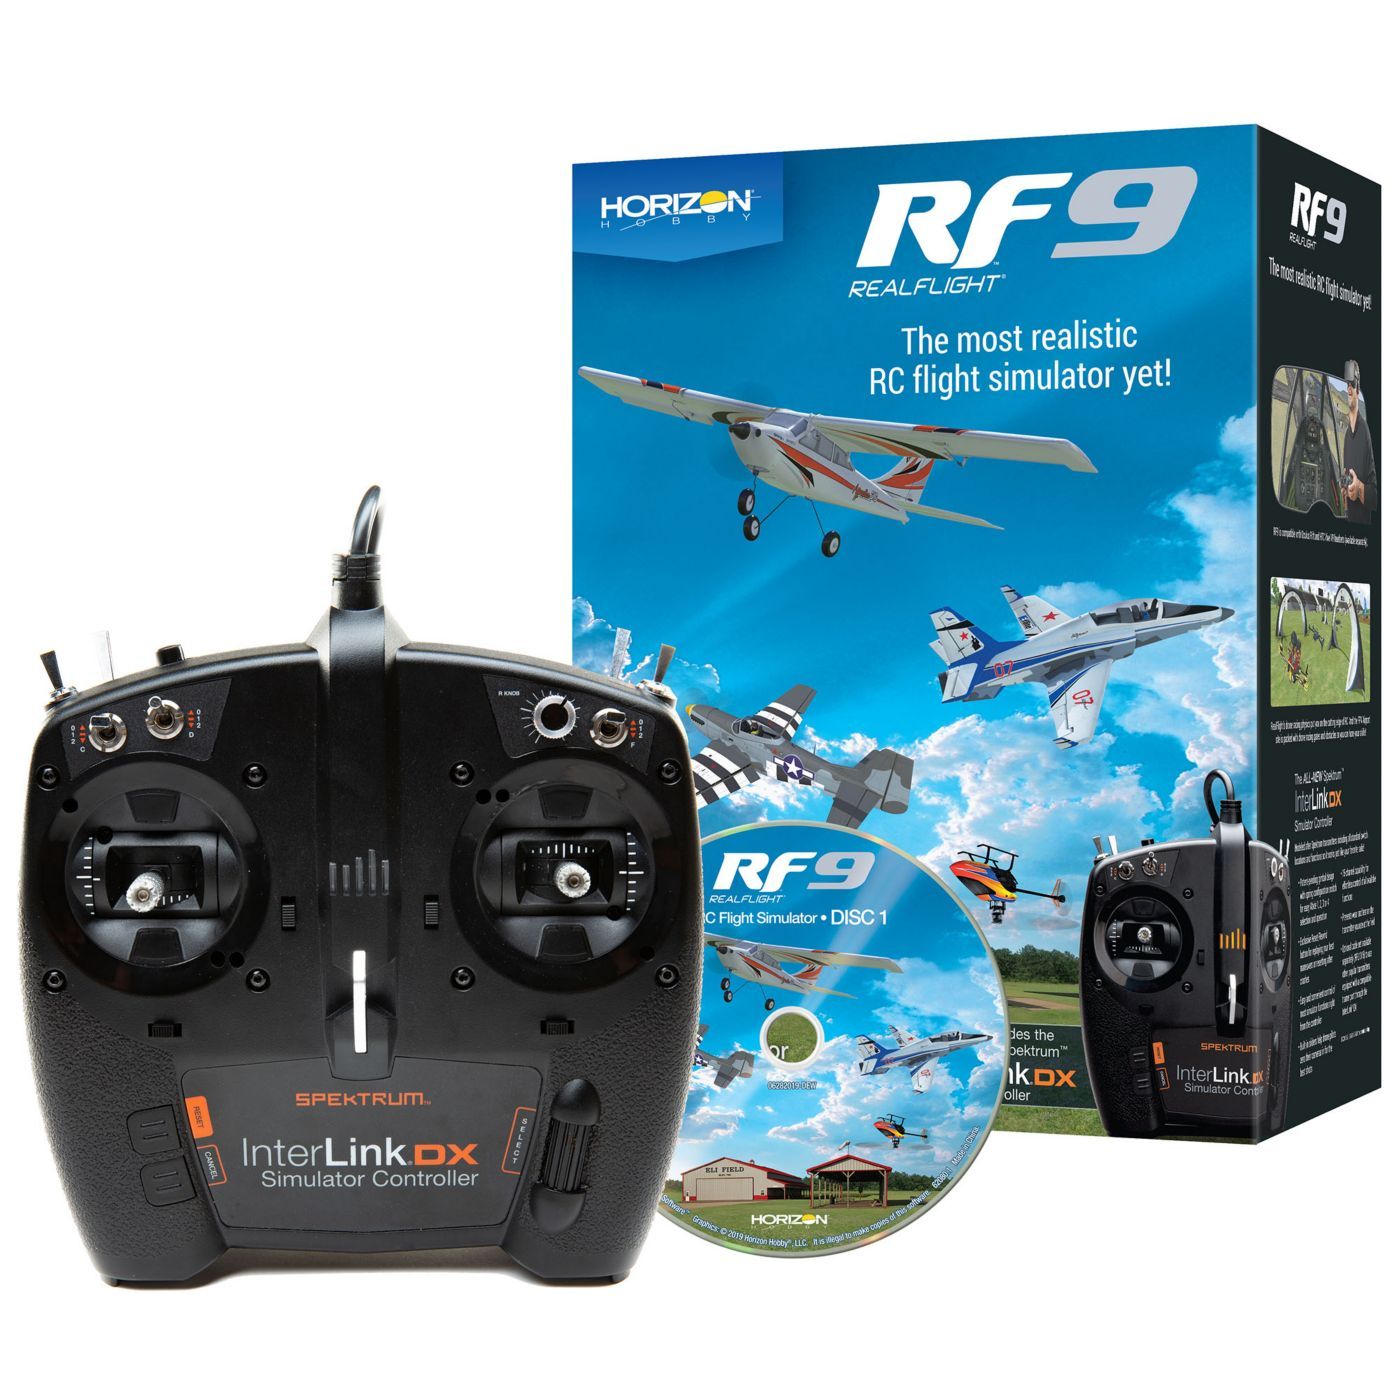 Check nu de nieuwe RealFlight 9 vliegsimulator!